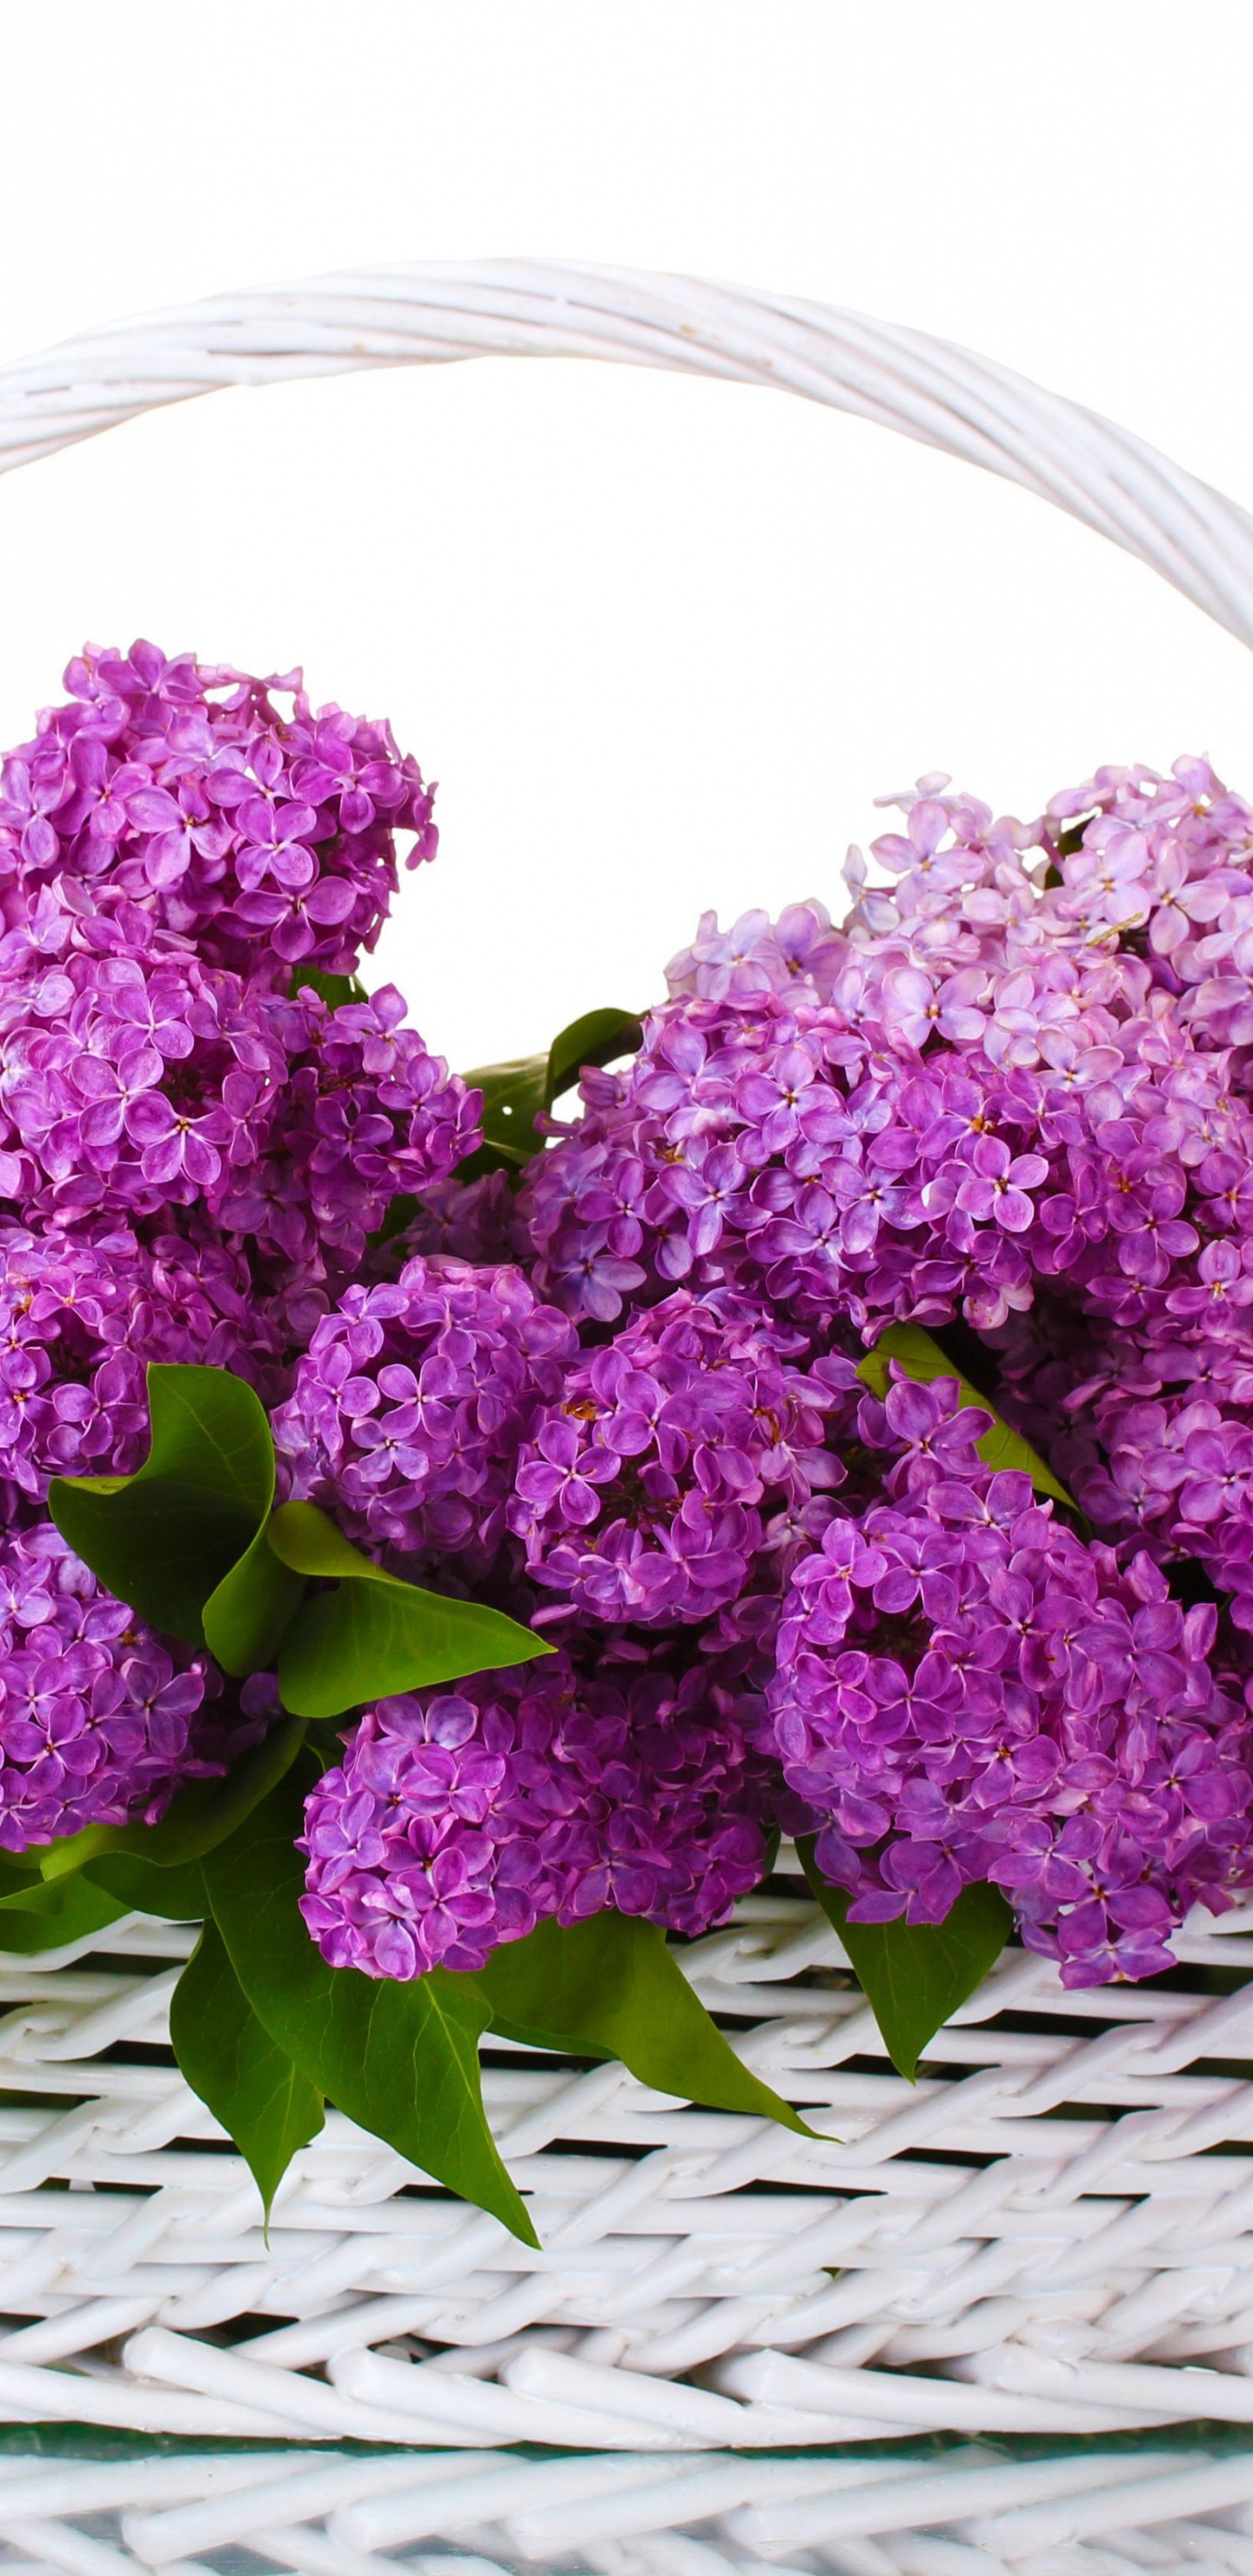 Fleurs Violettes Sur Panier Tressé. Wallpaper in 1440x2960 Resolution